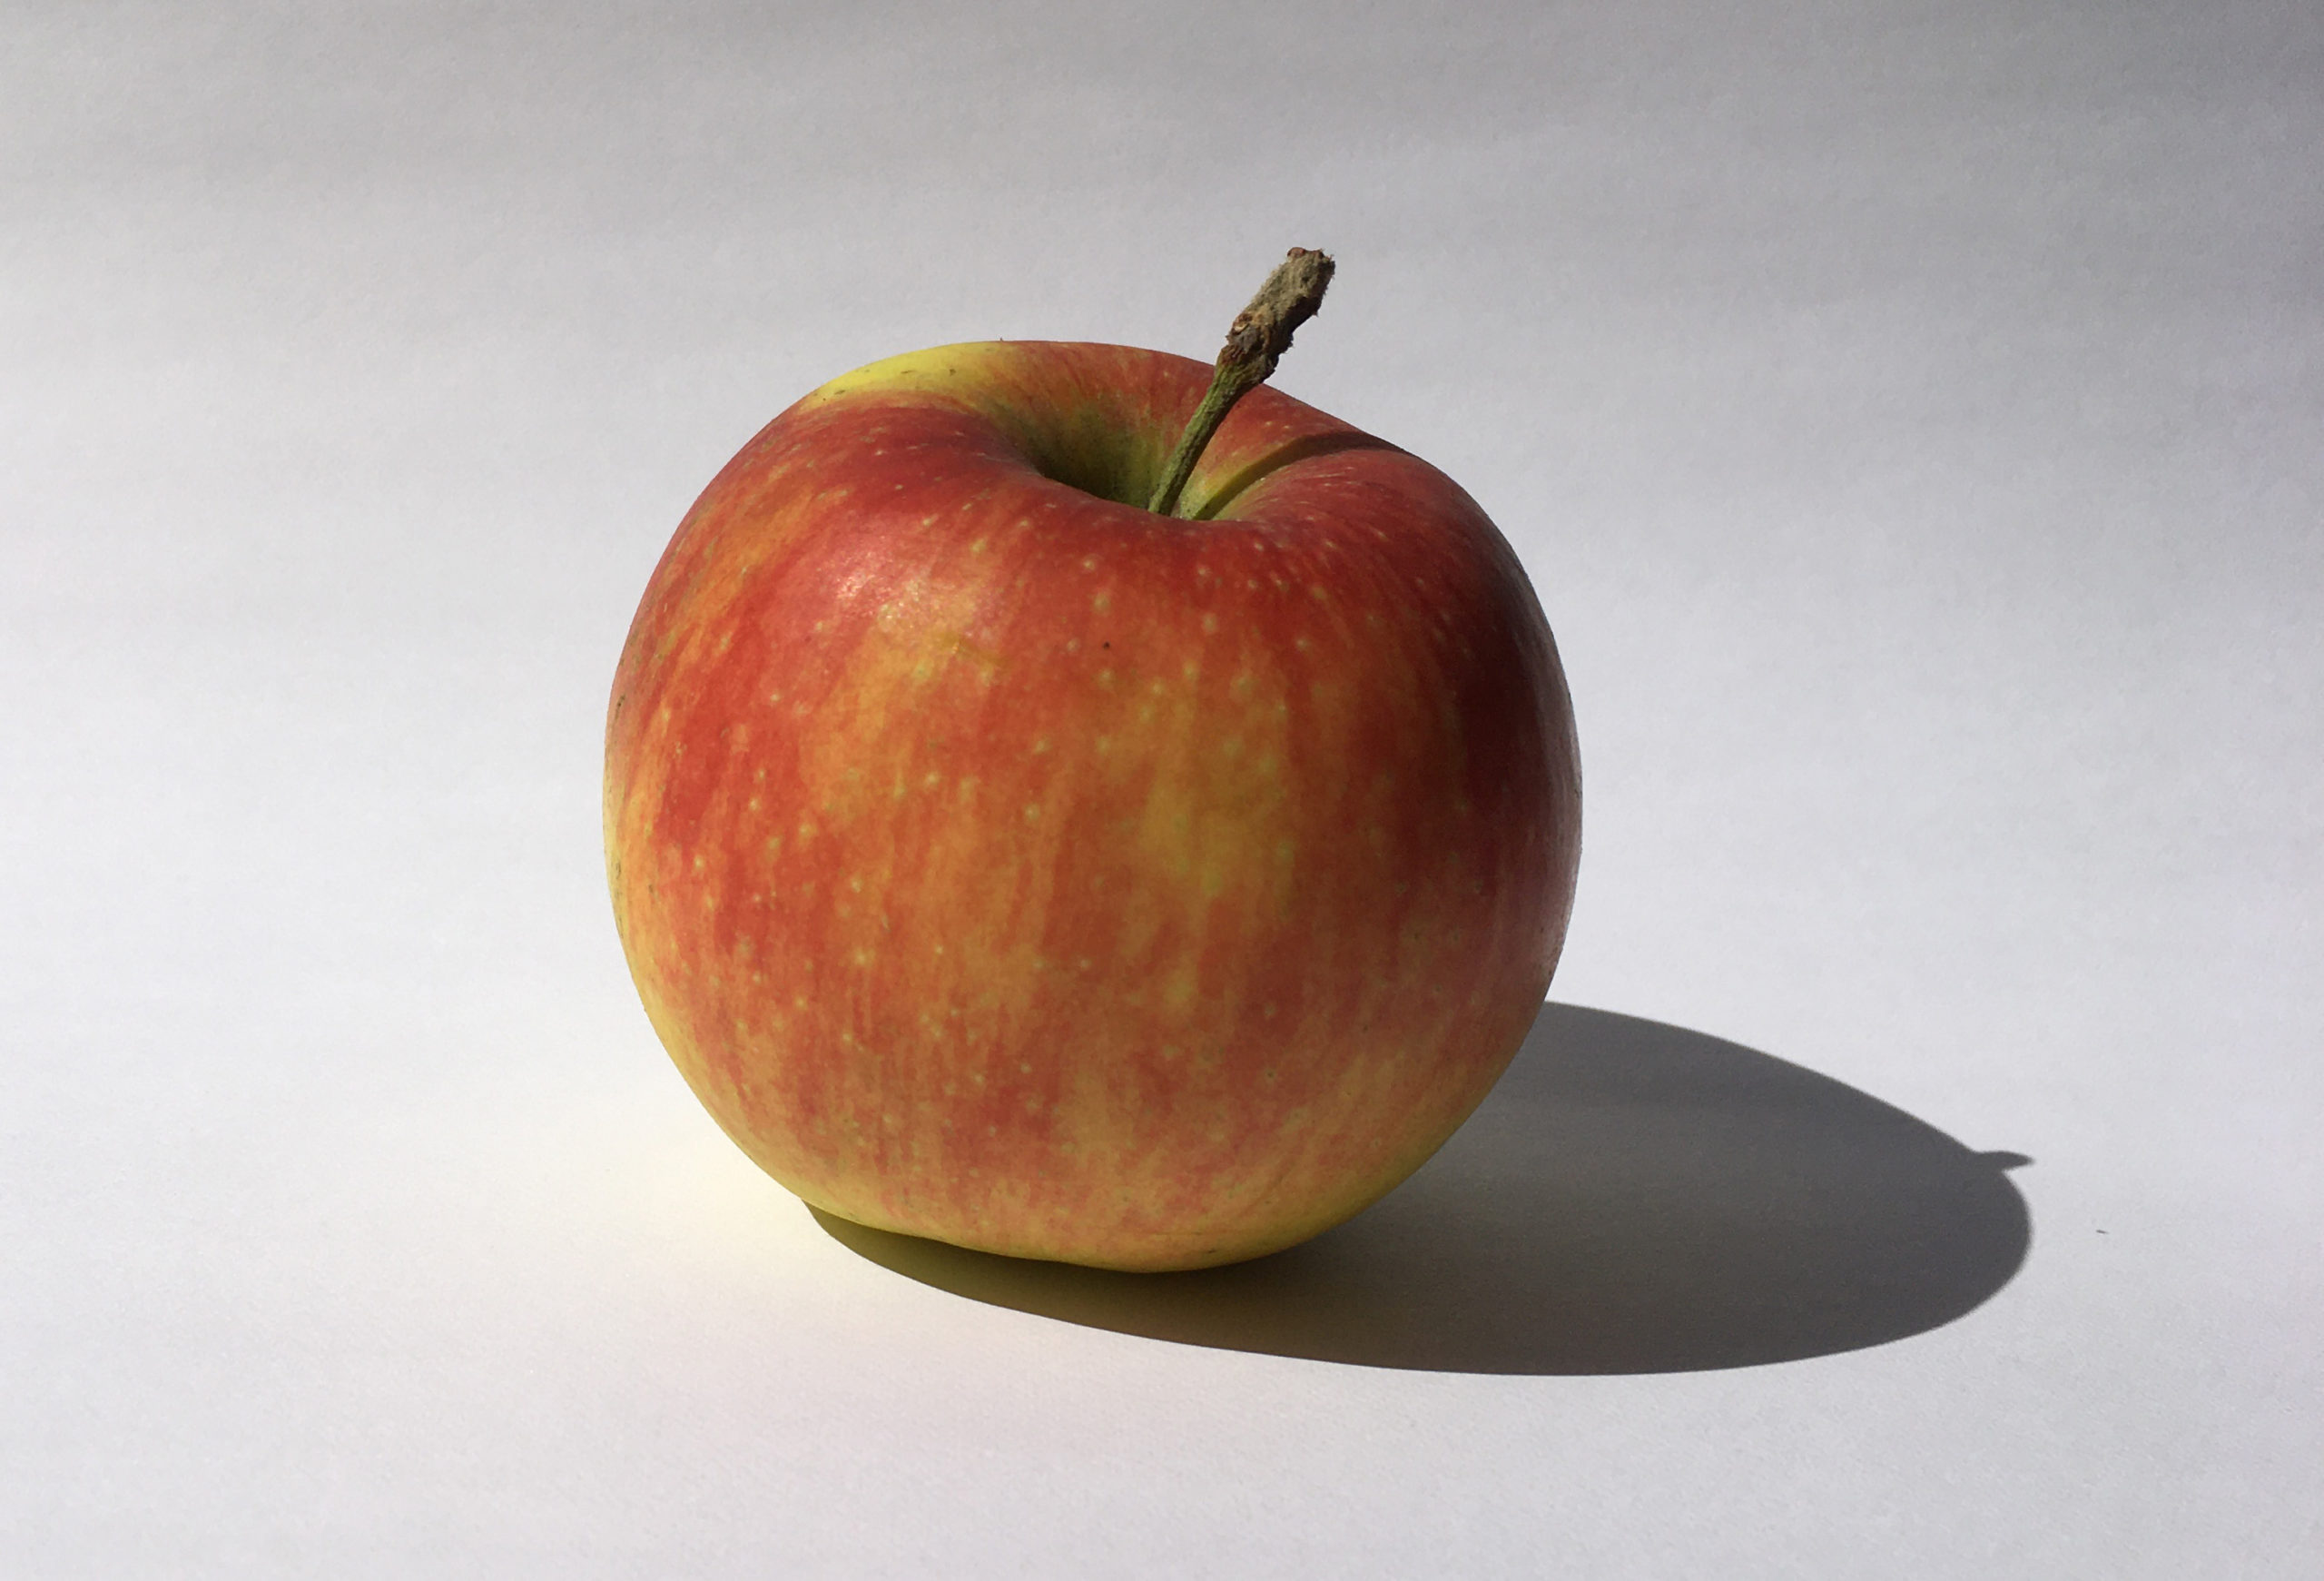 Vorlage: Apfel in Farbe